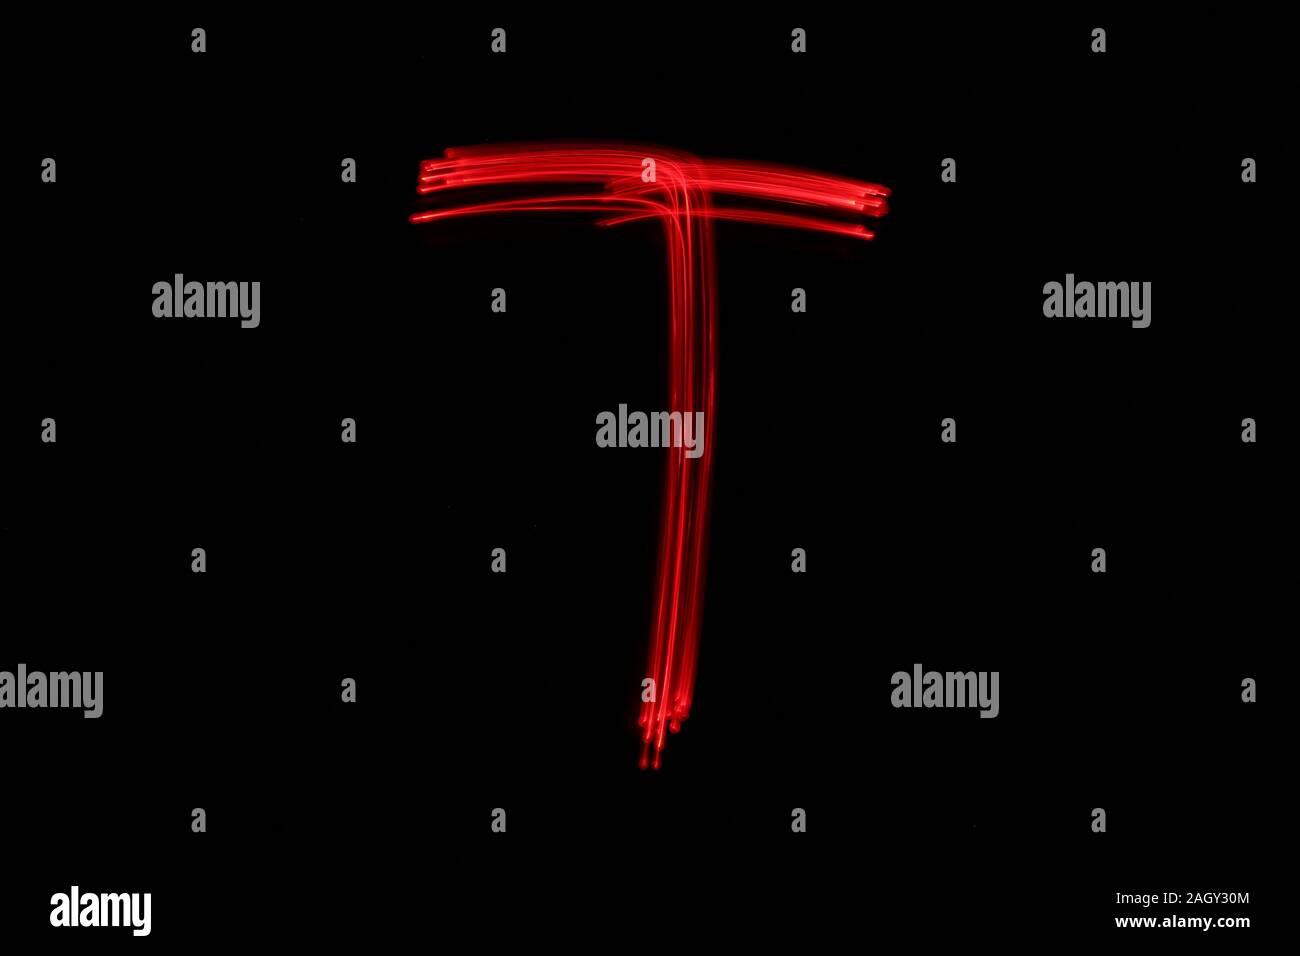 Licht Malerei Fotografie der Buchstaben des Alphabets, die Lichterketten in Neon Rot Farbe vor einem schwarzen Hintergrund dargestellt. Fotos mit langer Belichtungszeit. Stockfoto